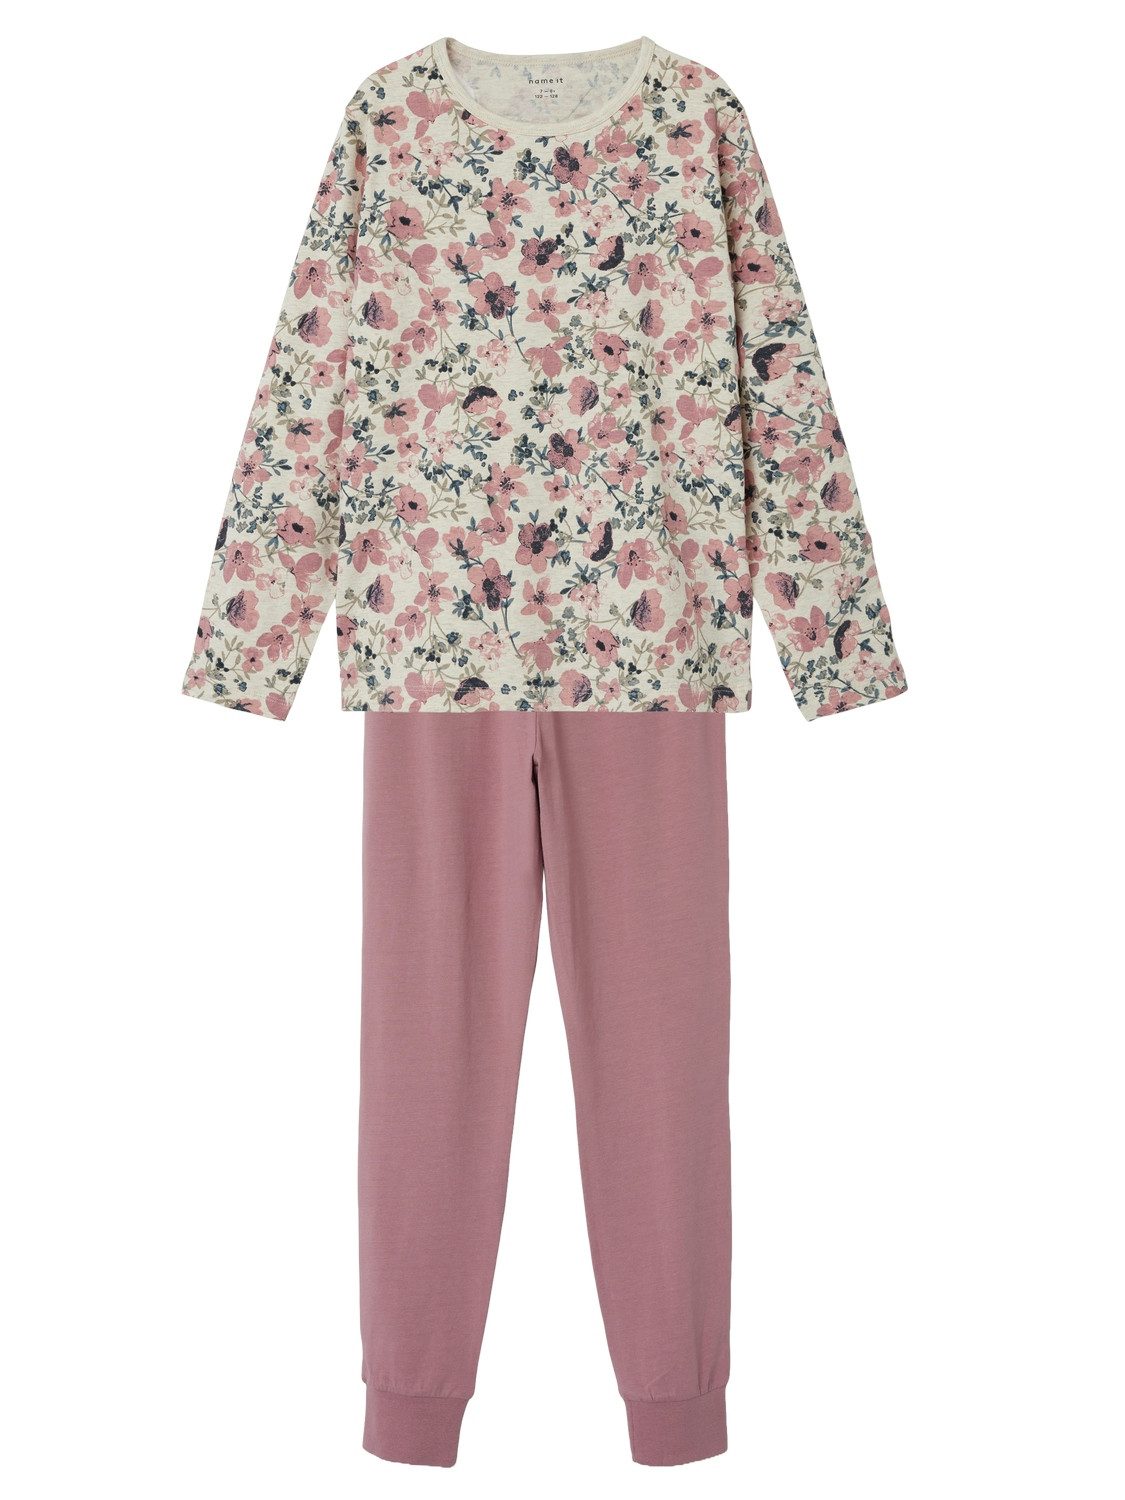 Name it KIDS gebloemde pyjama roze ecru multi Meisjes Stretchkatoen Ronde hals 110 116